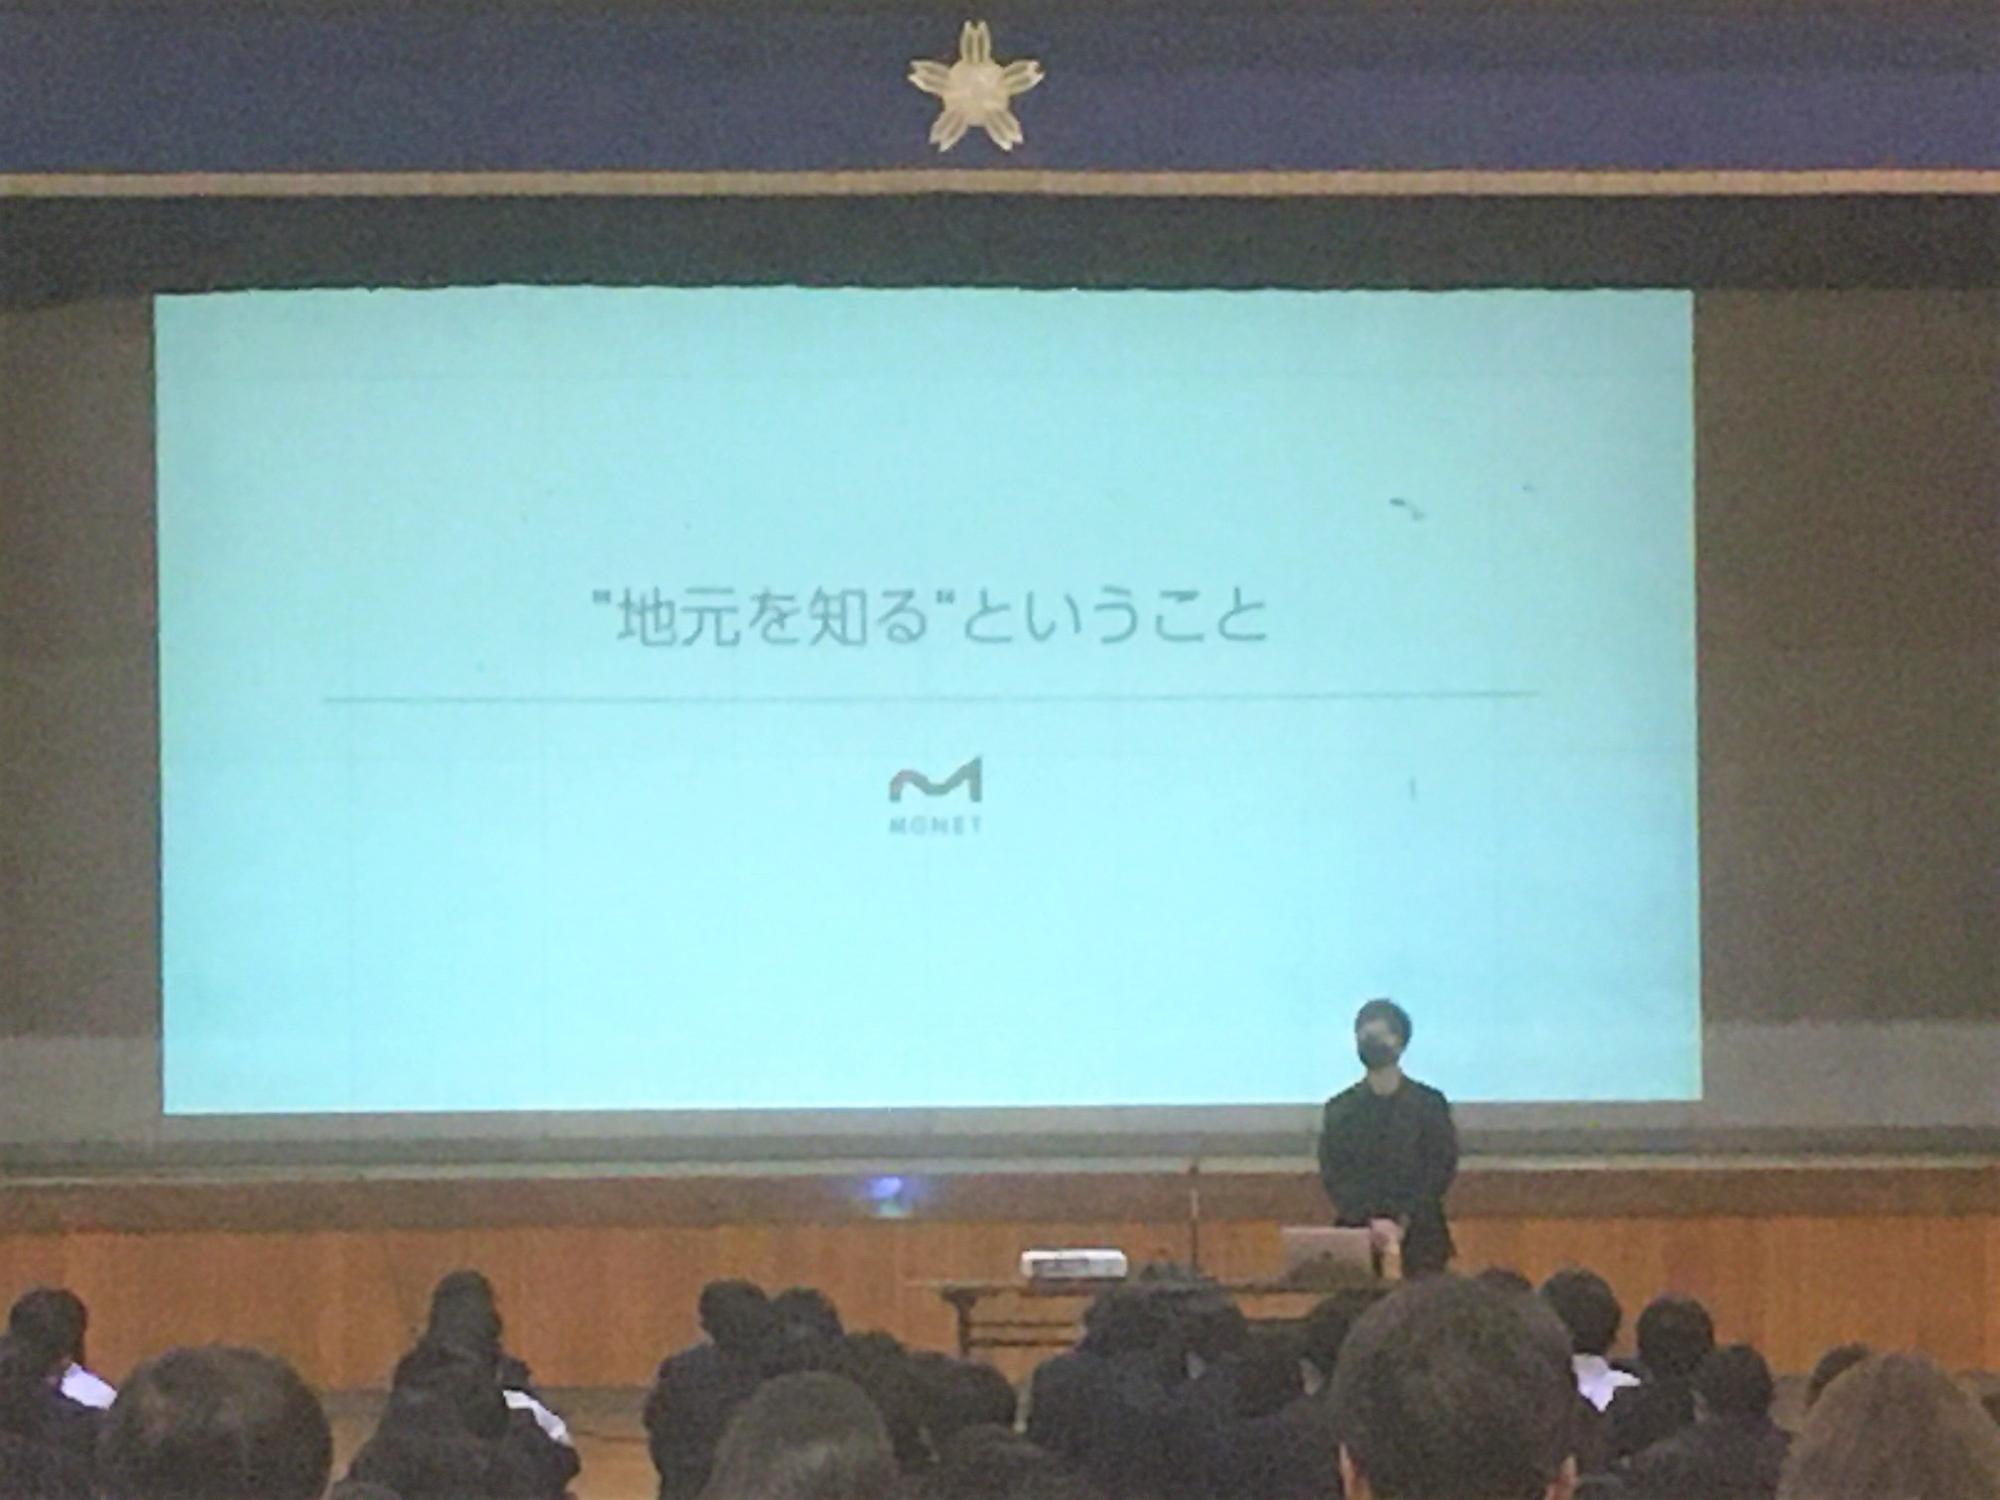 株式会社MGNETの代表取締役である武田修美氏が講演を行っているところ。テーマは「"地元を知る"ということ」